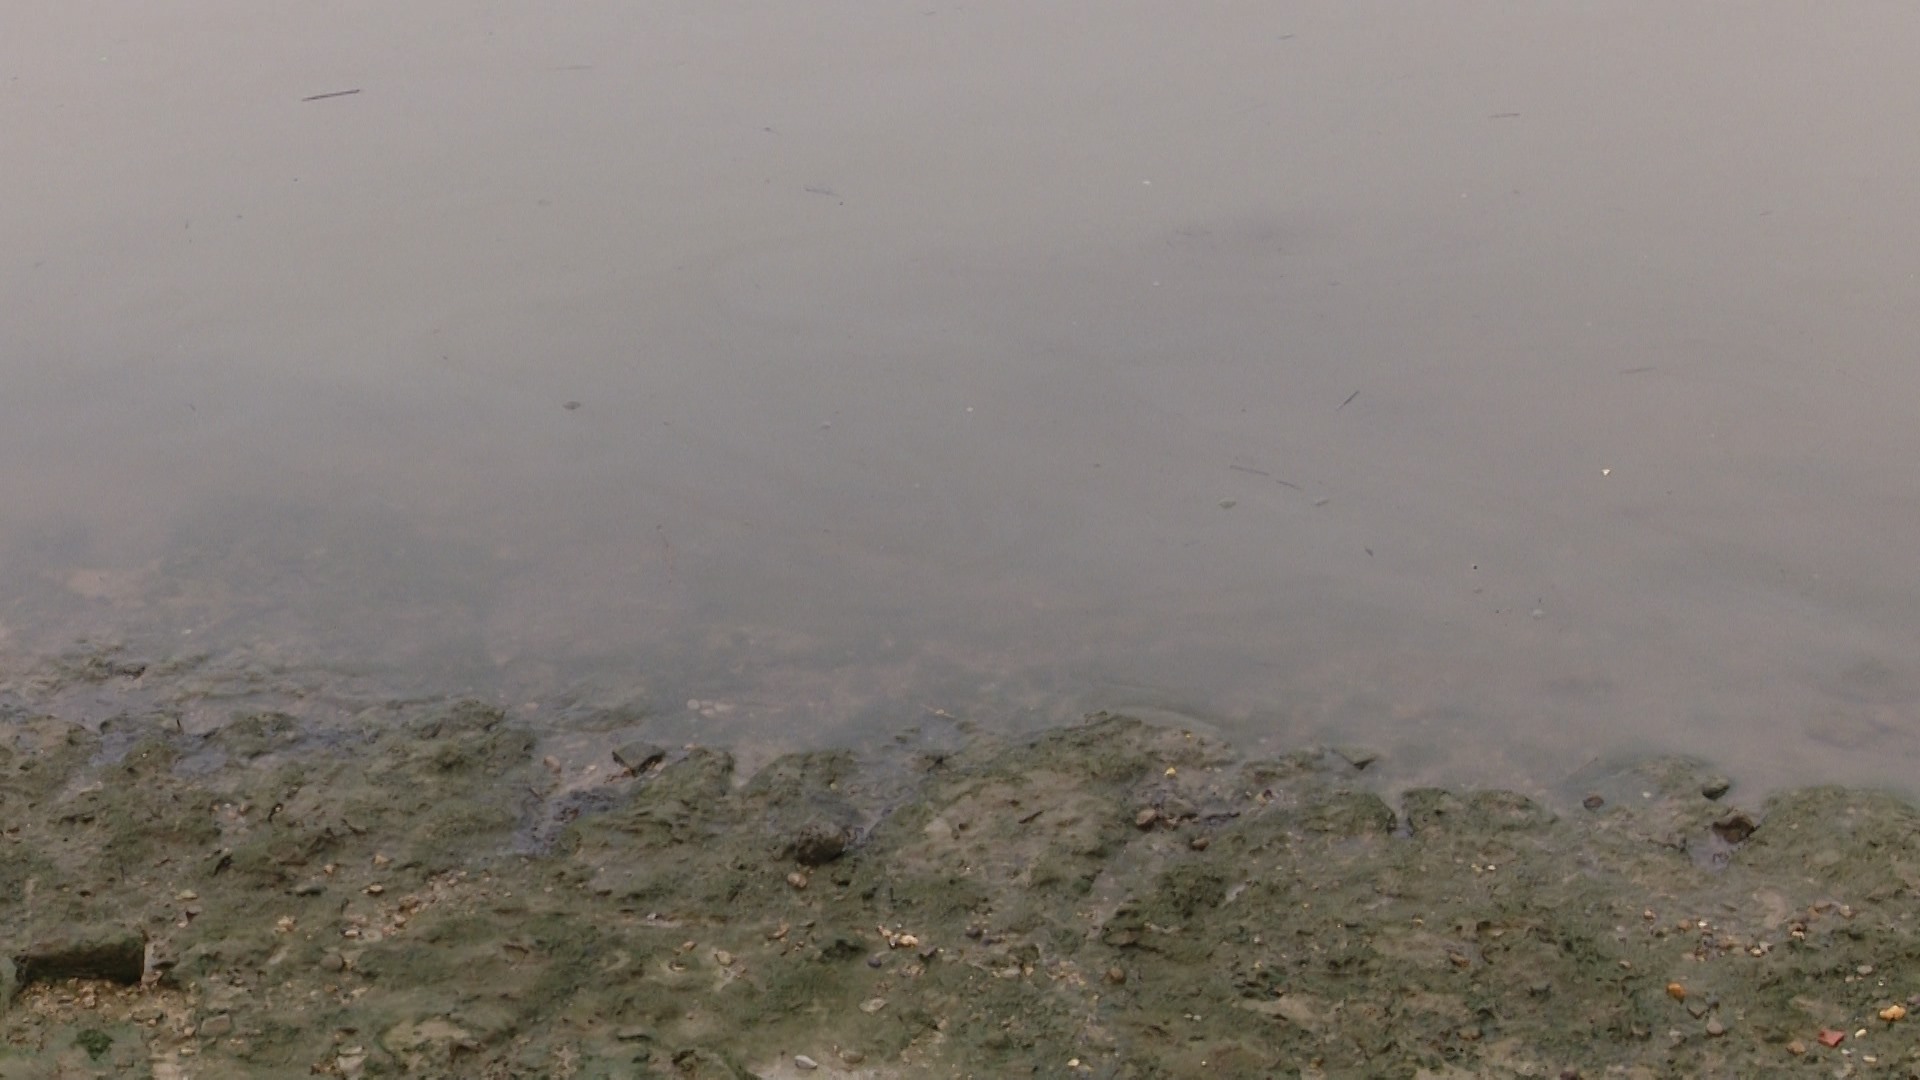 Mặt nước sông Hồng có váng do một số thùng phuy bị rò rỉ, chảy nước màu đen bốc mùi khó chịu.